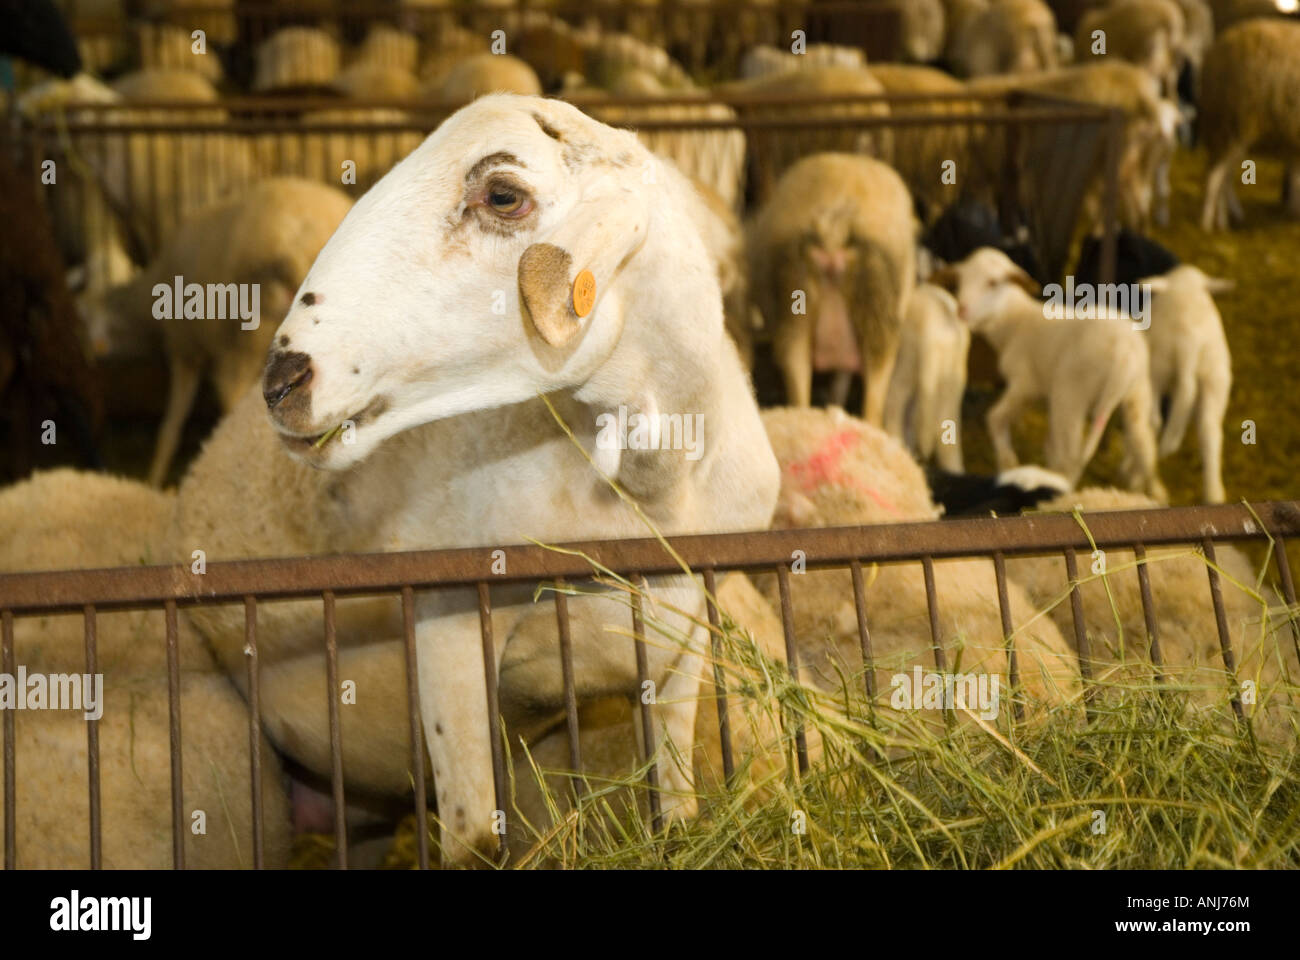 Ferme de moutons à Alcazar de San Juan, ESPAGNE Banque D'Images